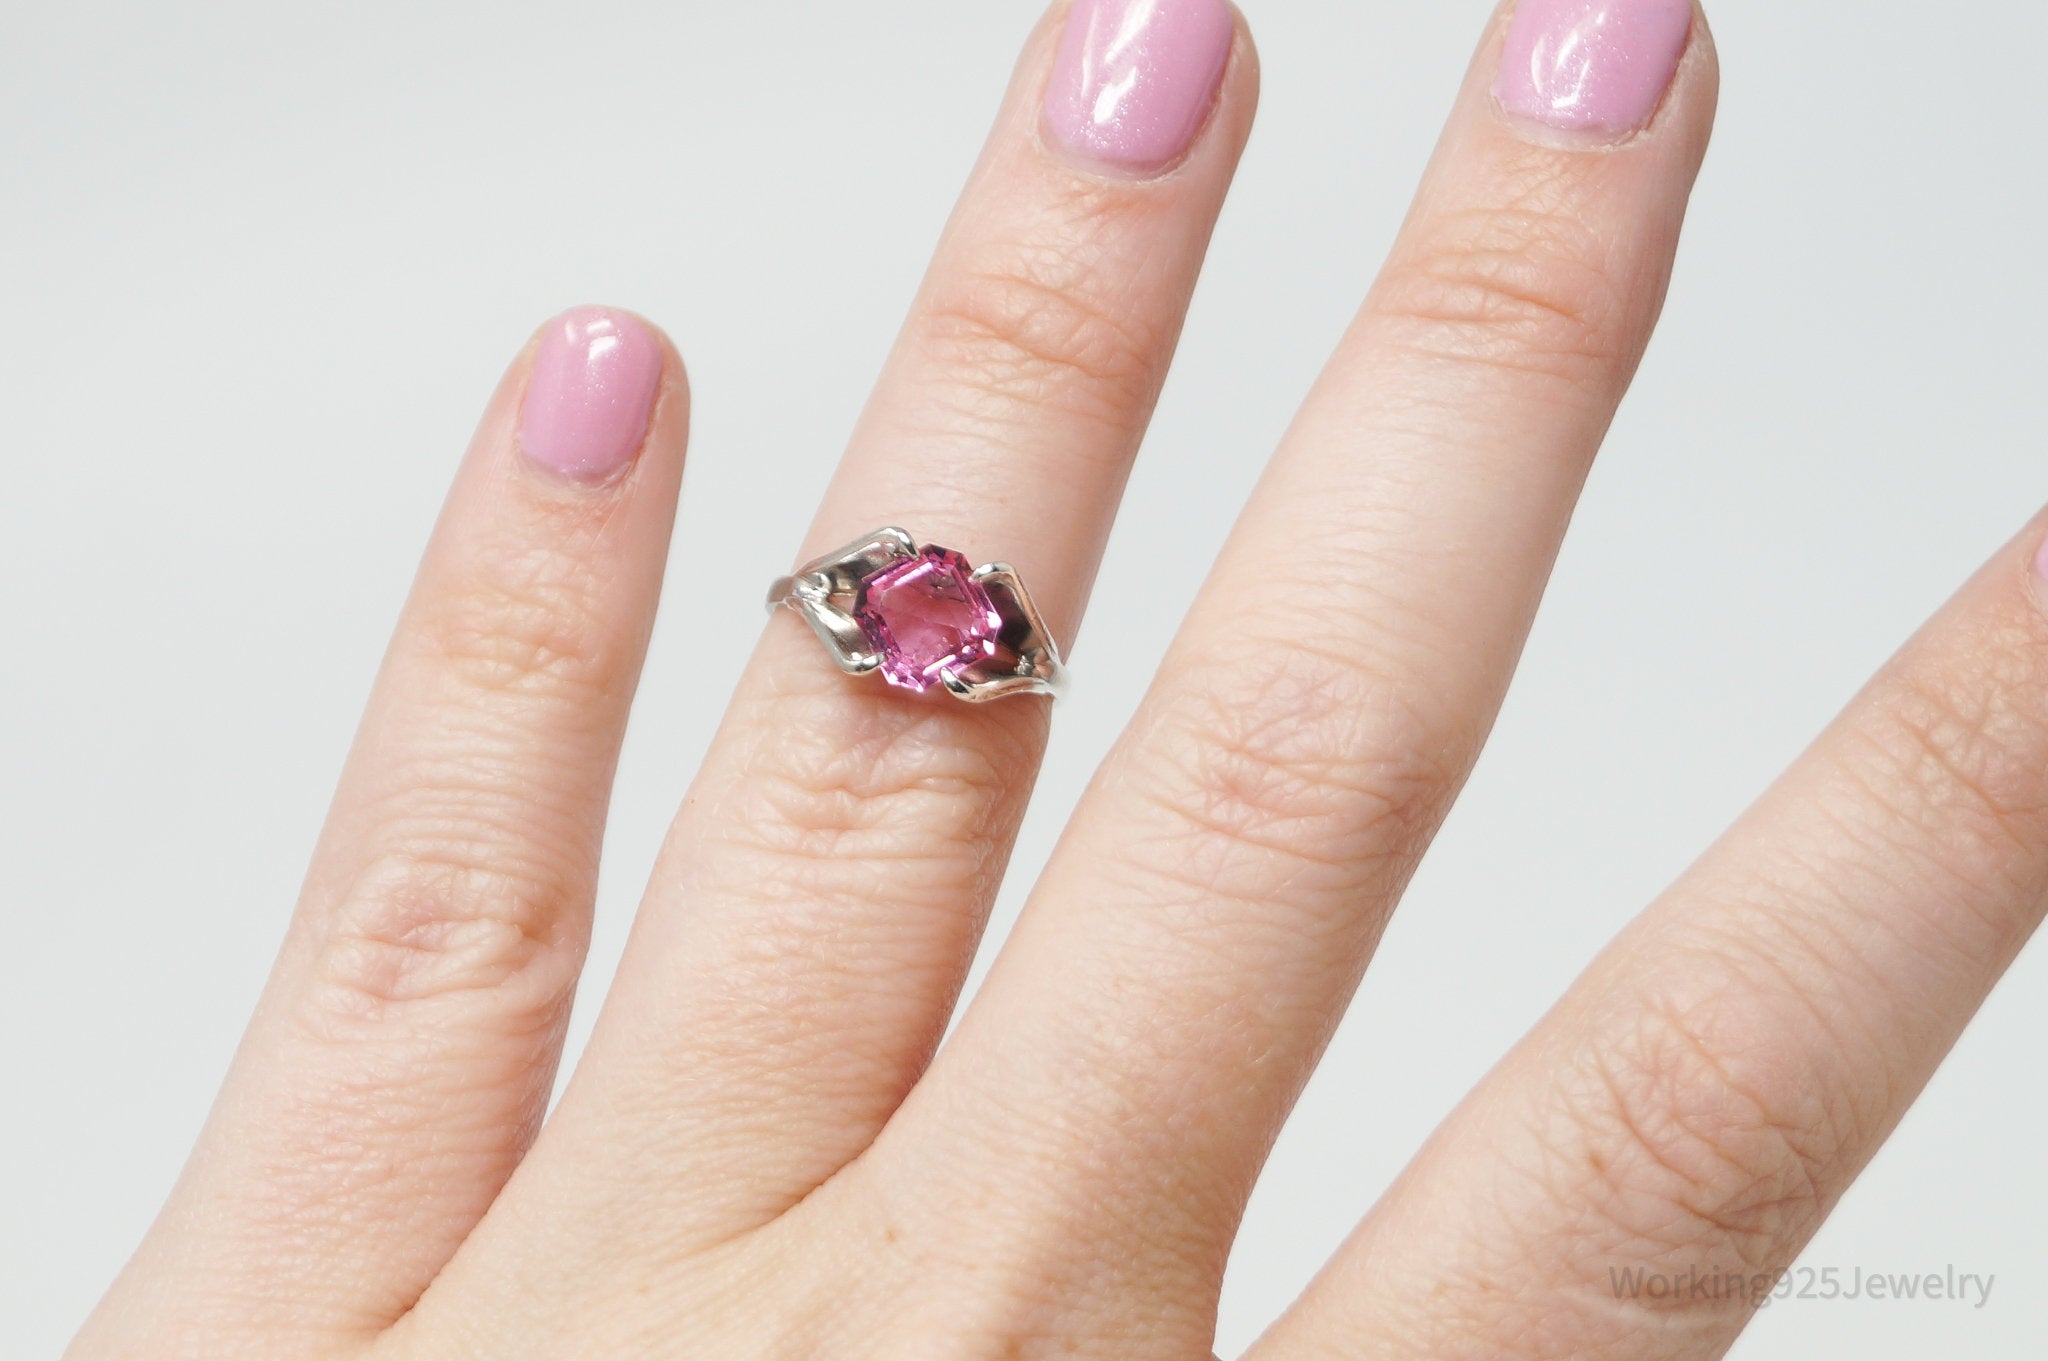 Antique Joseph Esposito Espo Pink Art Glass Sterling Silver Ring Size 4.75